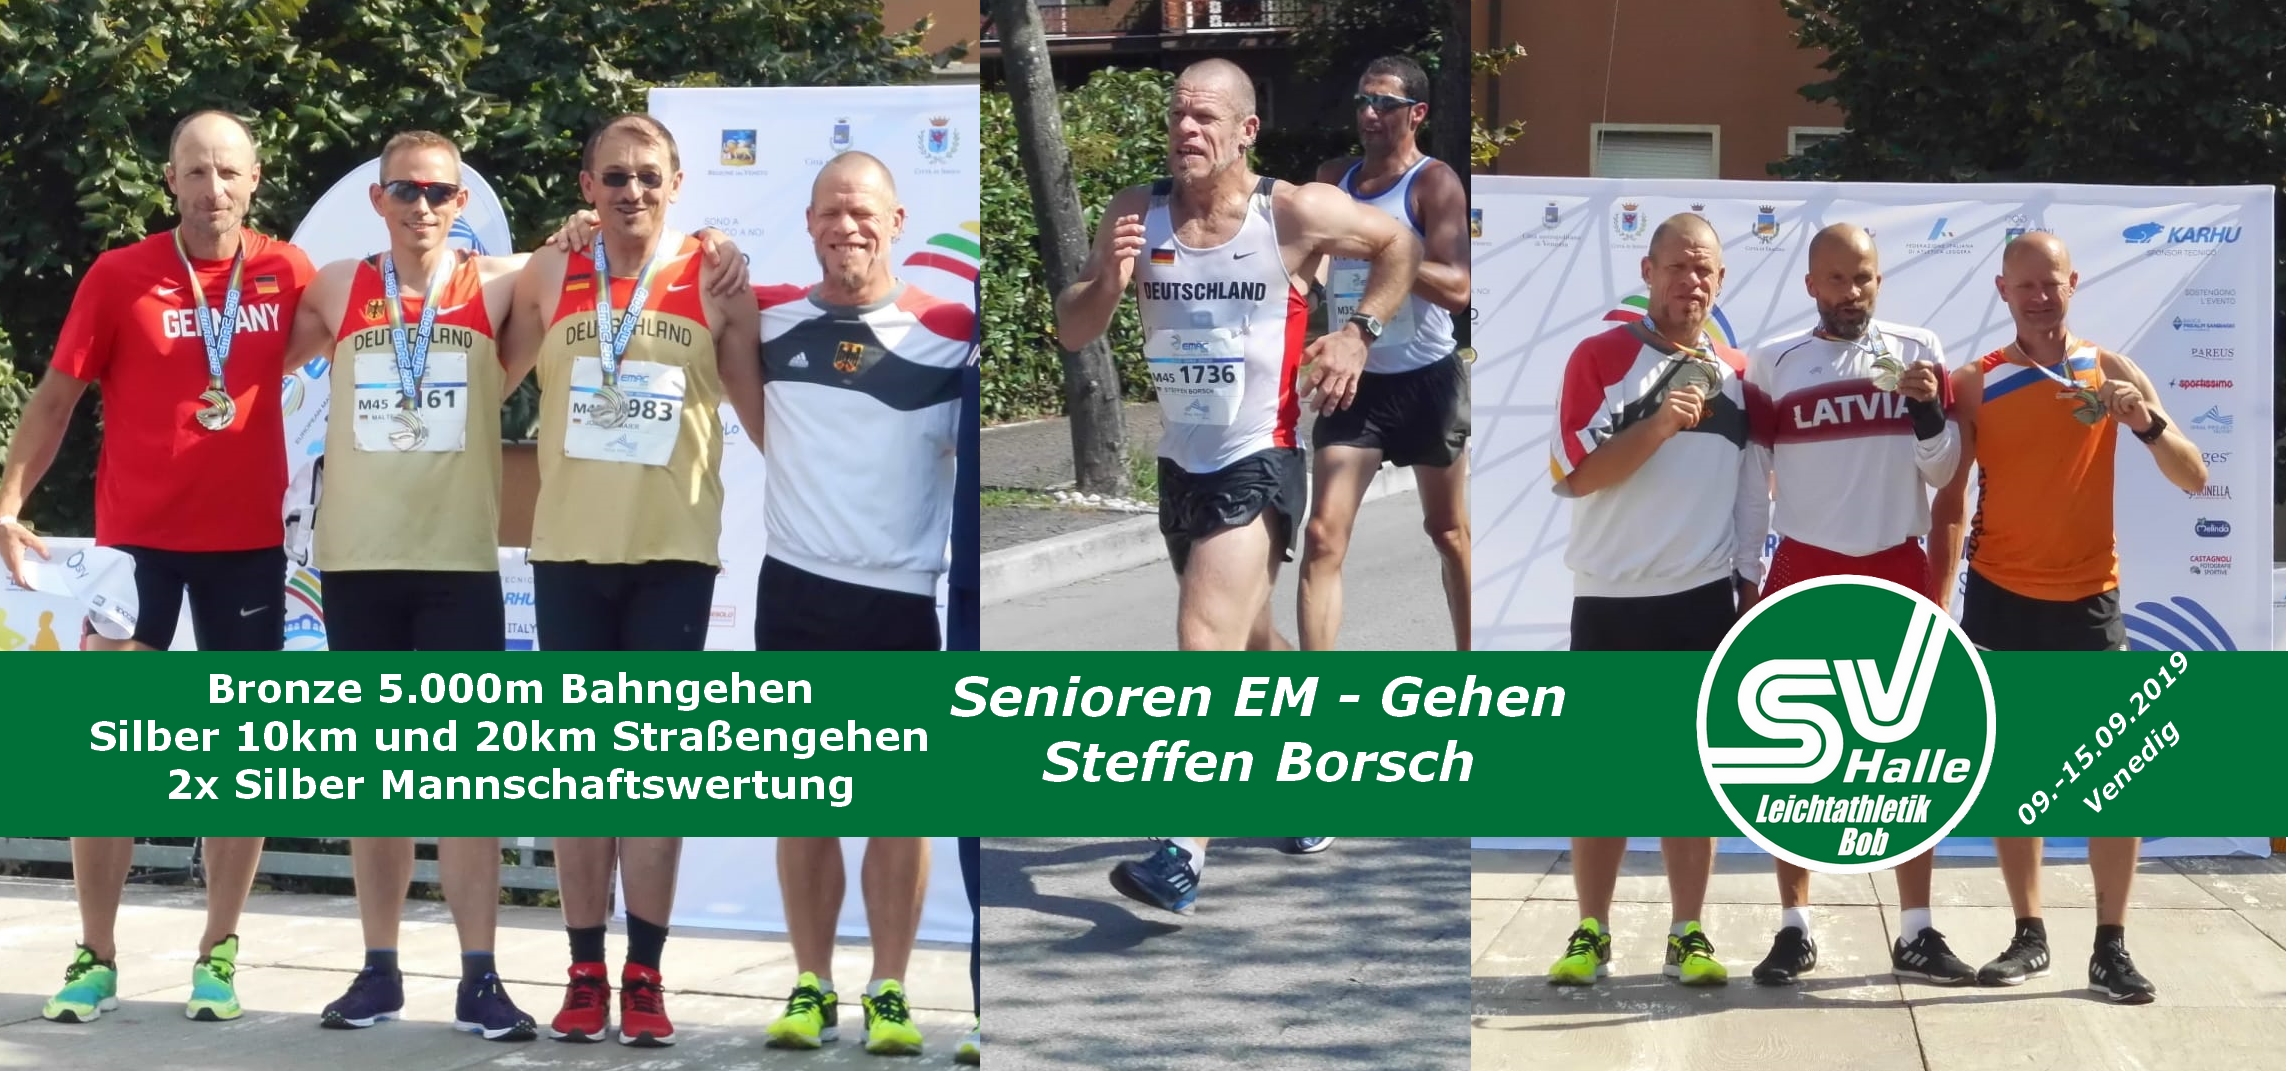 2019.09.15 Senioren EM Steffen Borsch